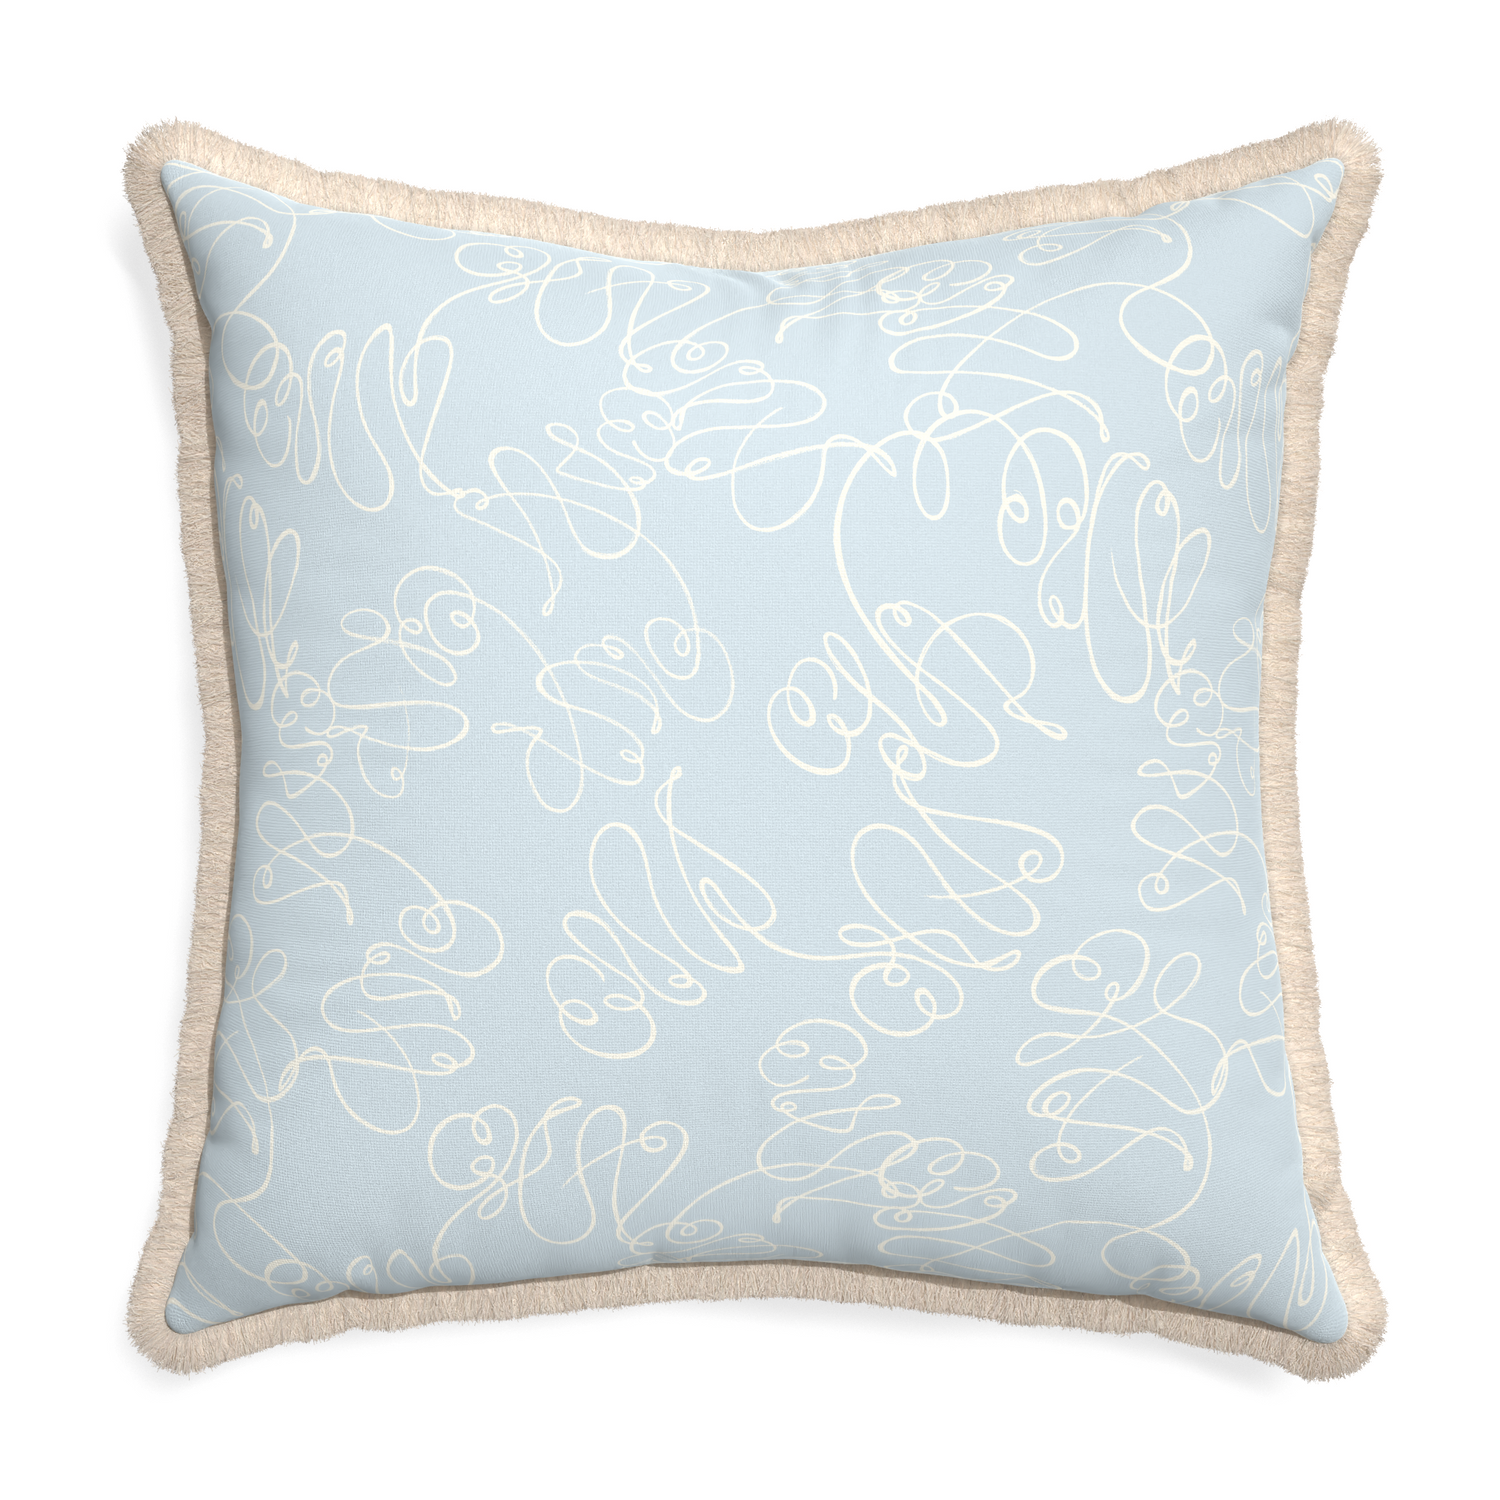 Euro-sham mirabella custom pillow with cream fringe on white background